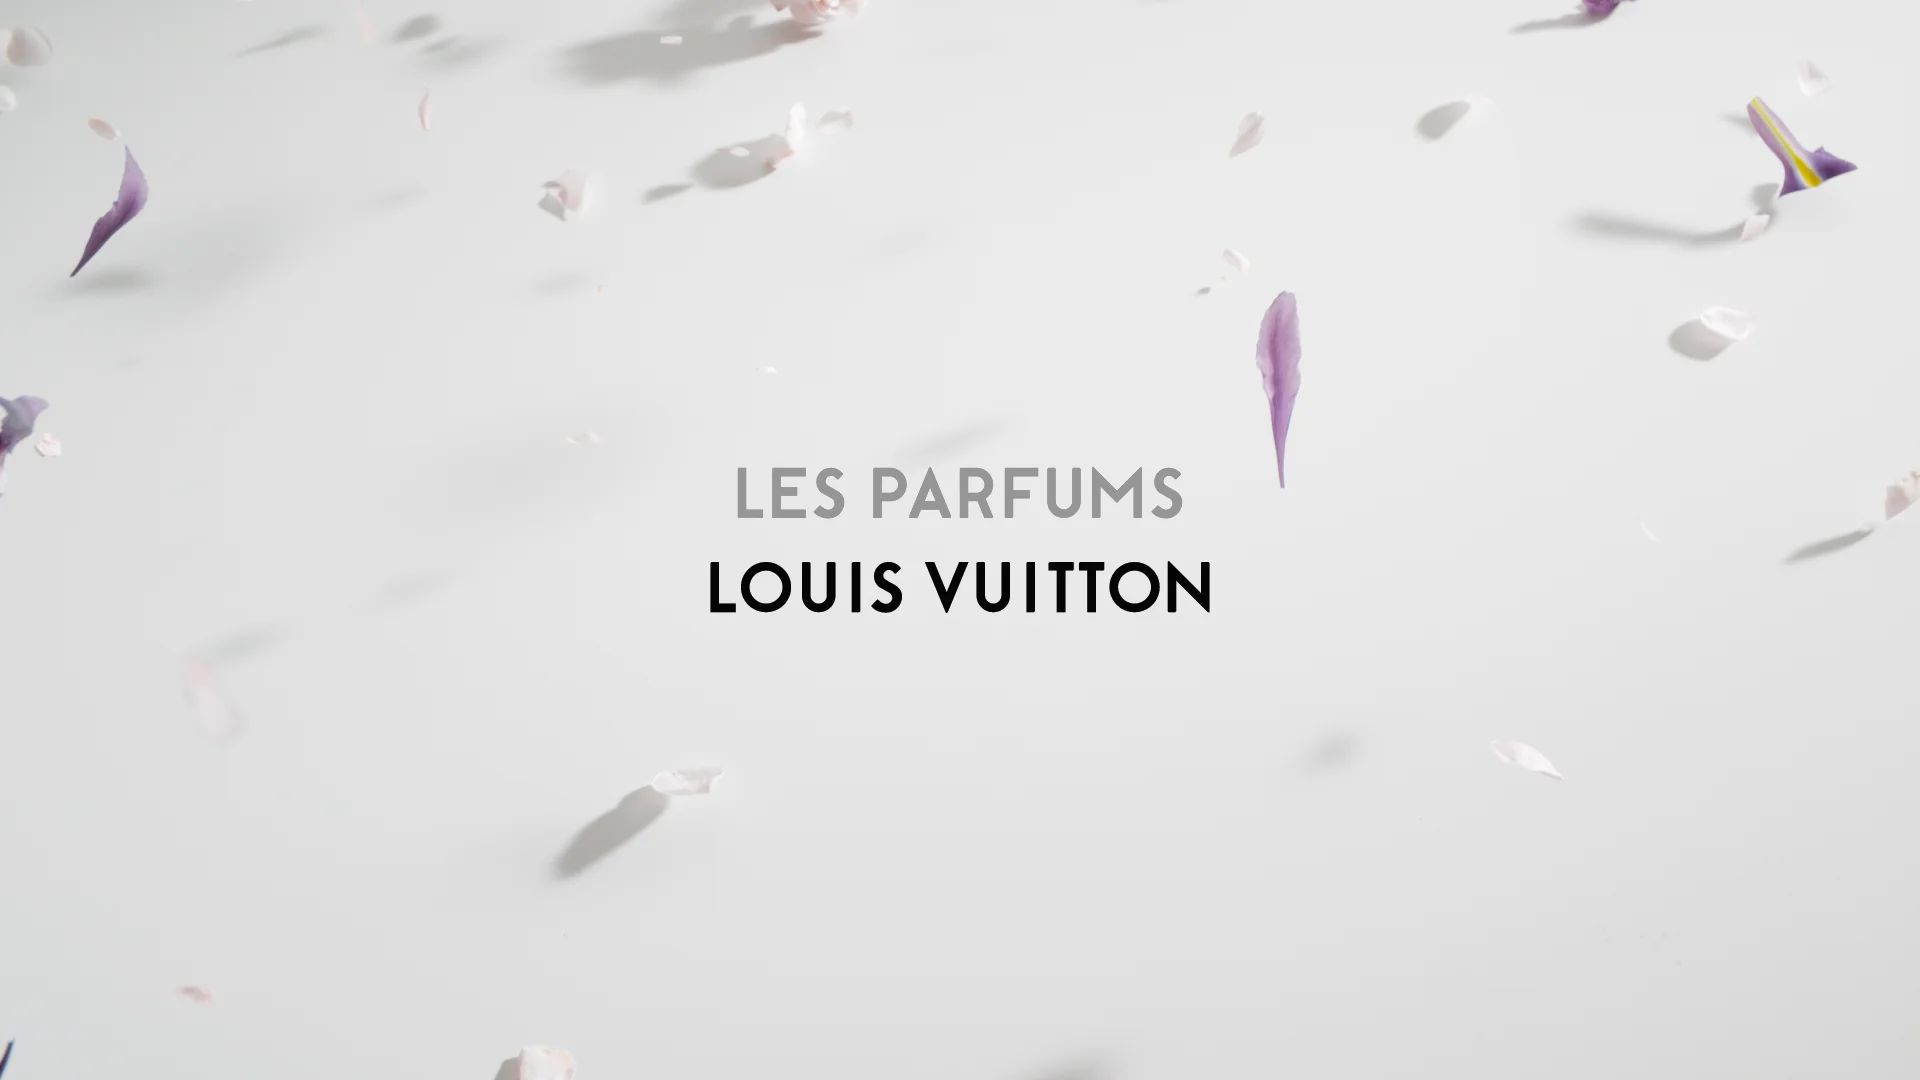 LOUIS VUITTON — LES PARFUMS on Vimeo